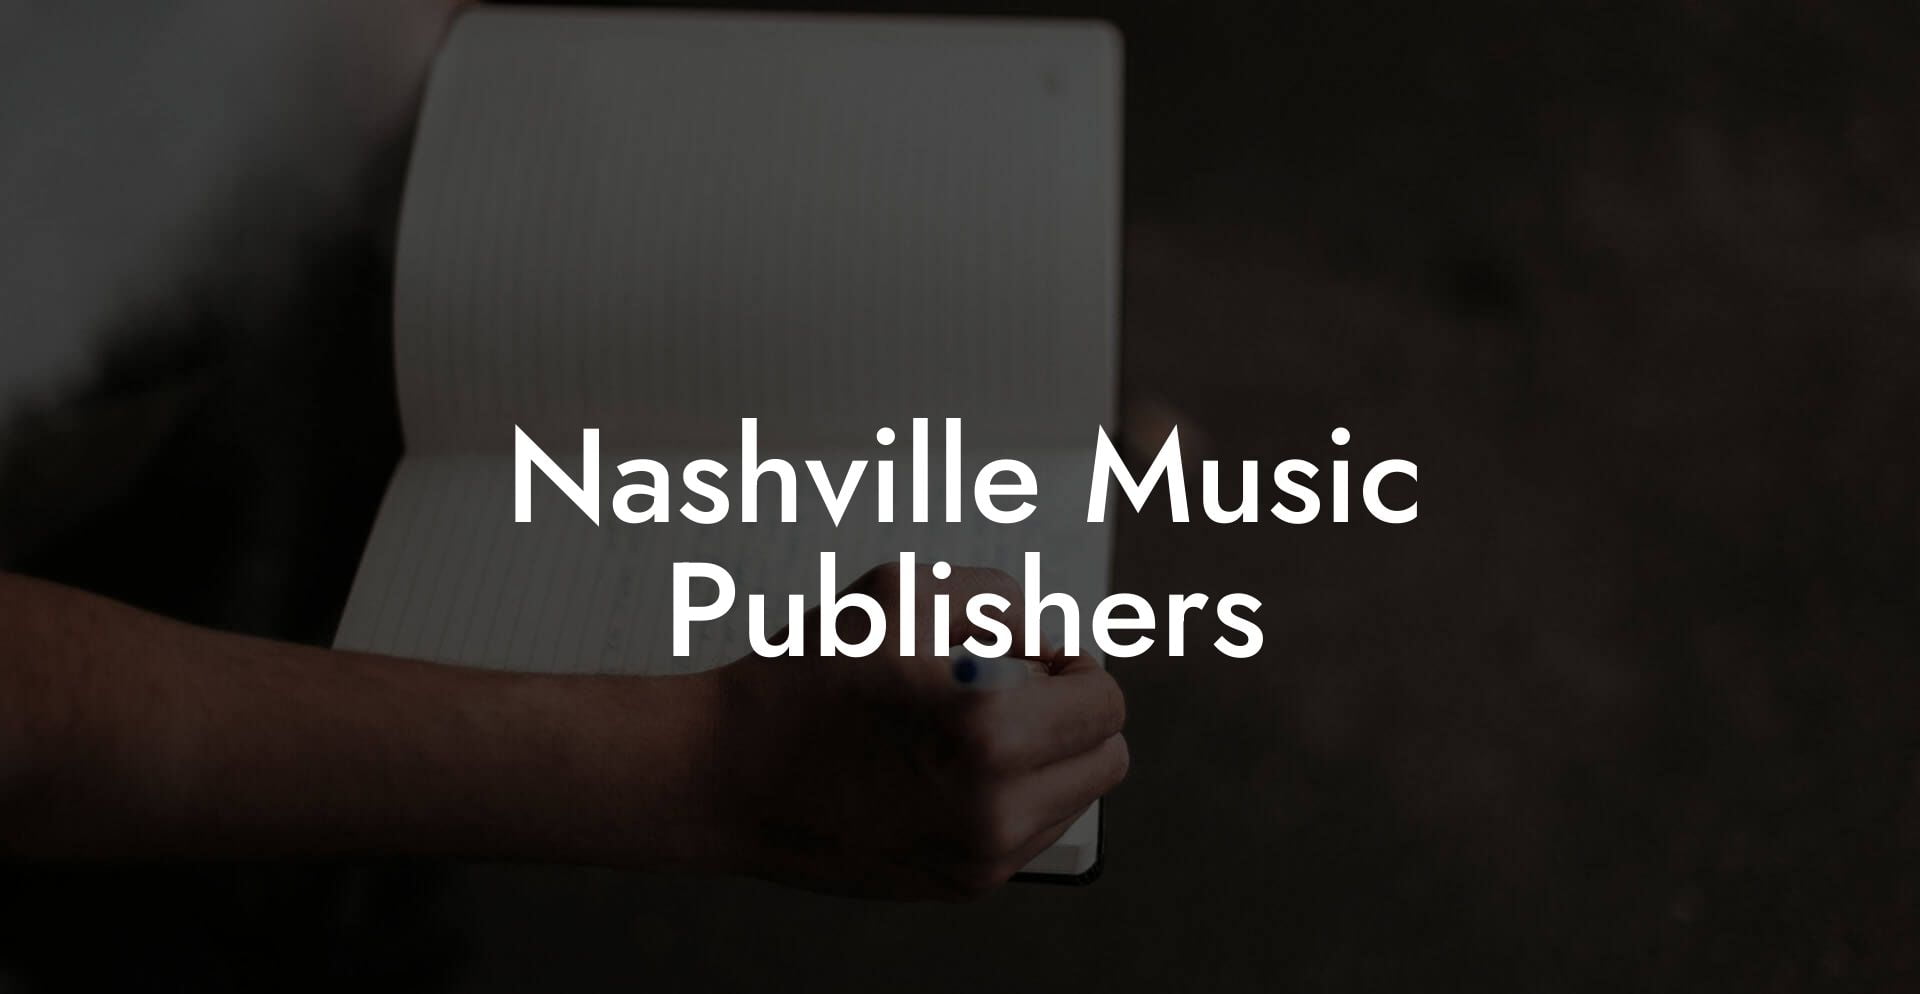 Nashville Music Publishers